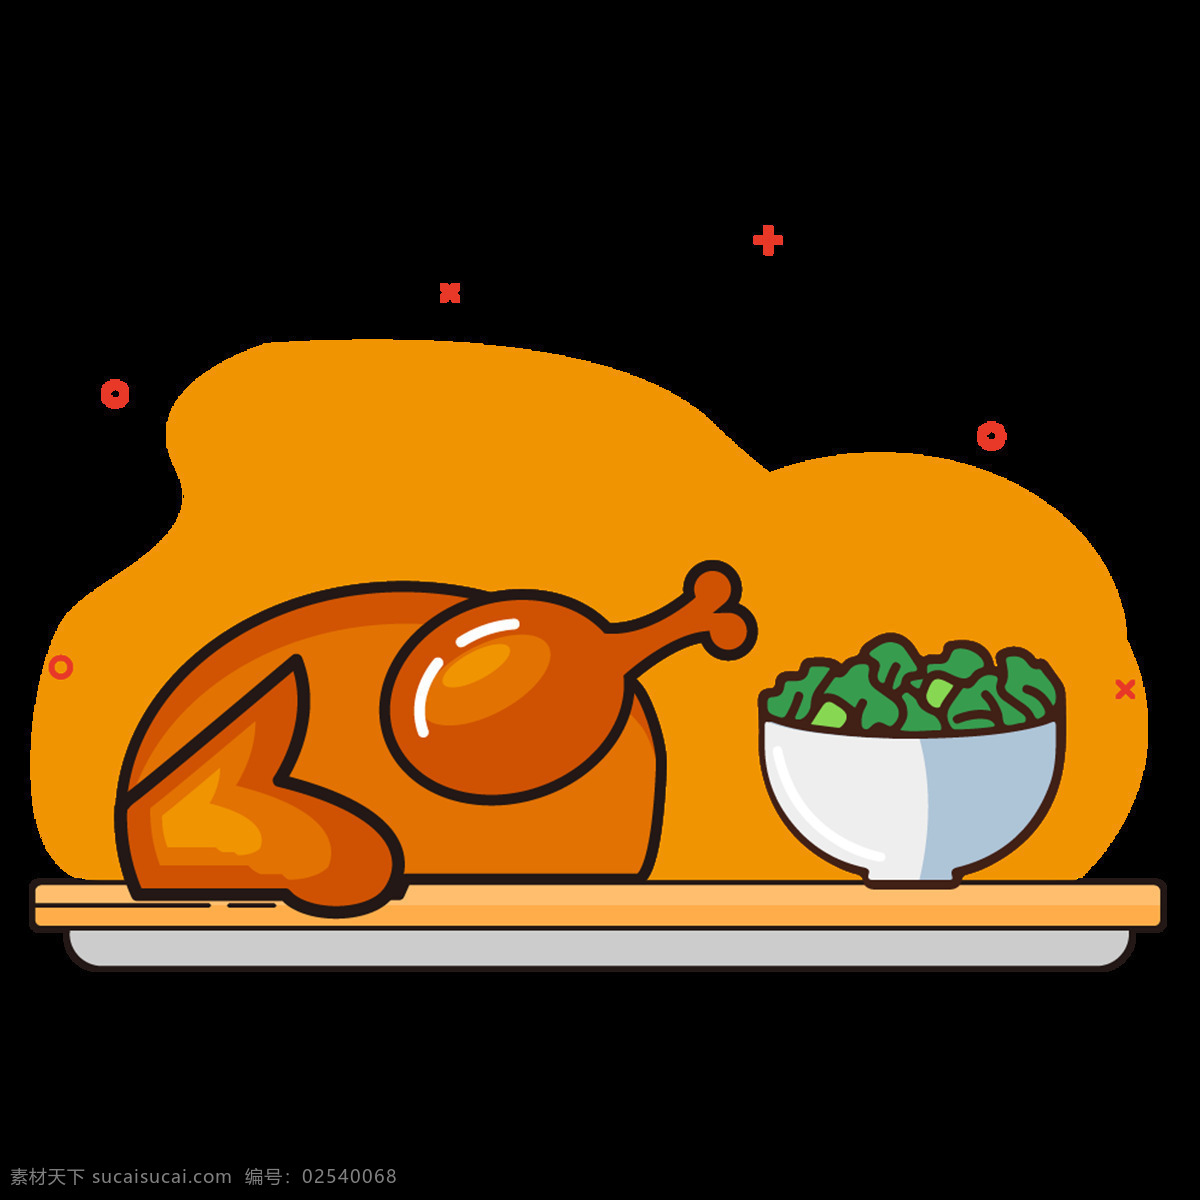 鸡腿盖饭图片 鸡腿 西蓝花 盖饭 餐饮插画 卡通 动画 黄色 烧鸡 美食 食物 餐厅 logo 卡通设计